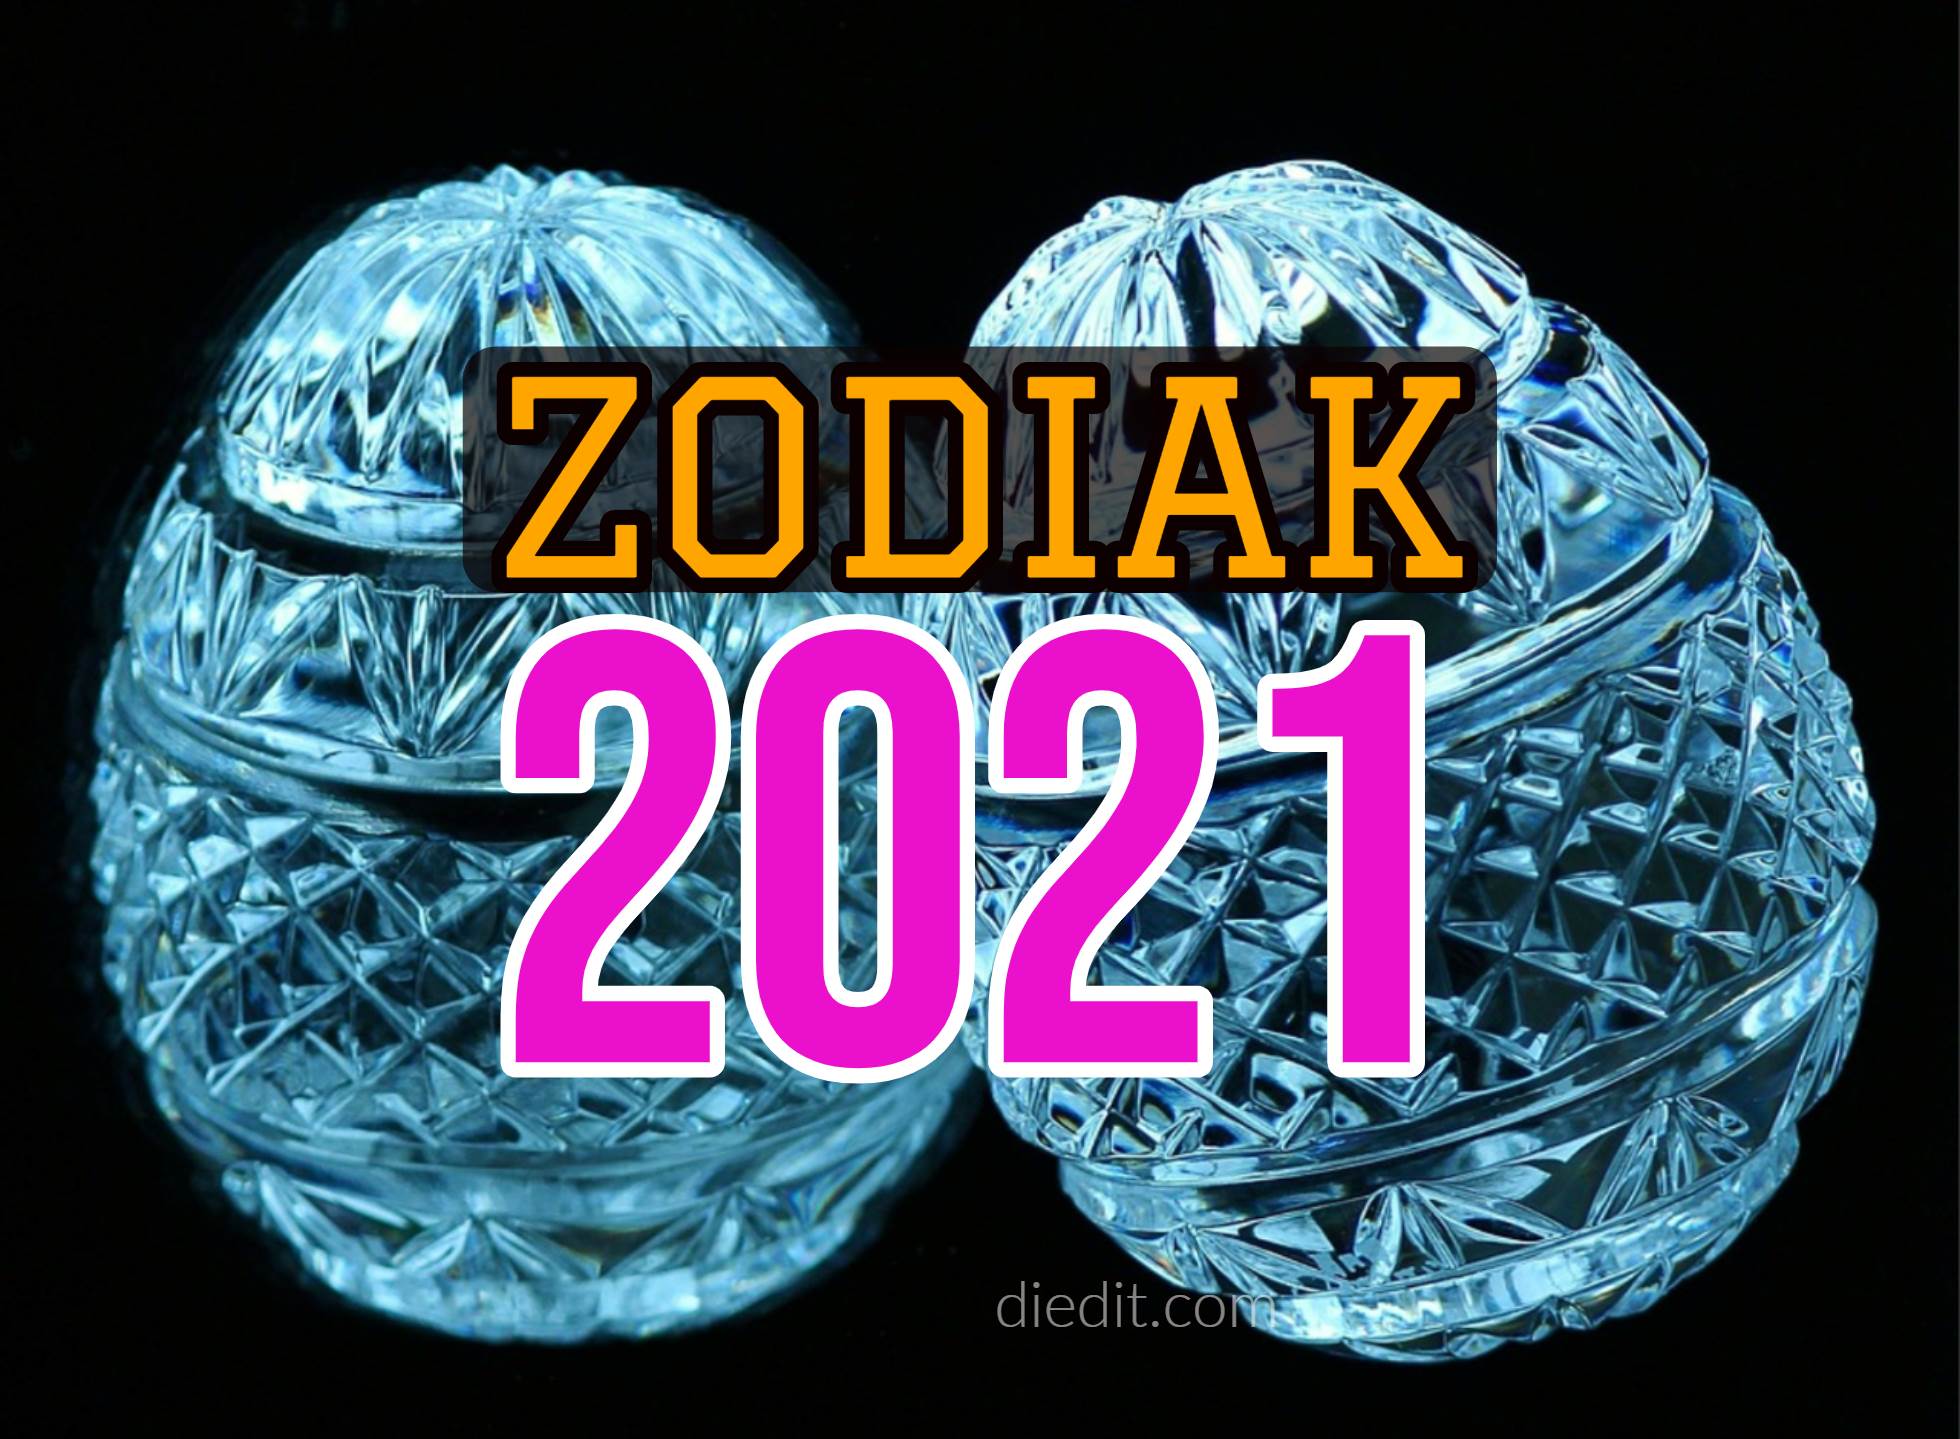 Ramalan Zodiak 2021 - Prediksi Cinta, Karir, Keuangan - diedit.com